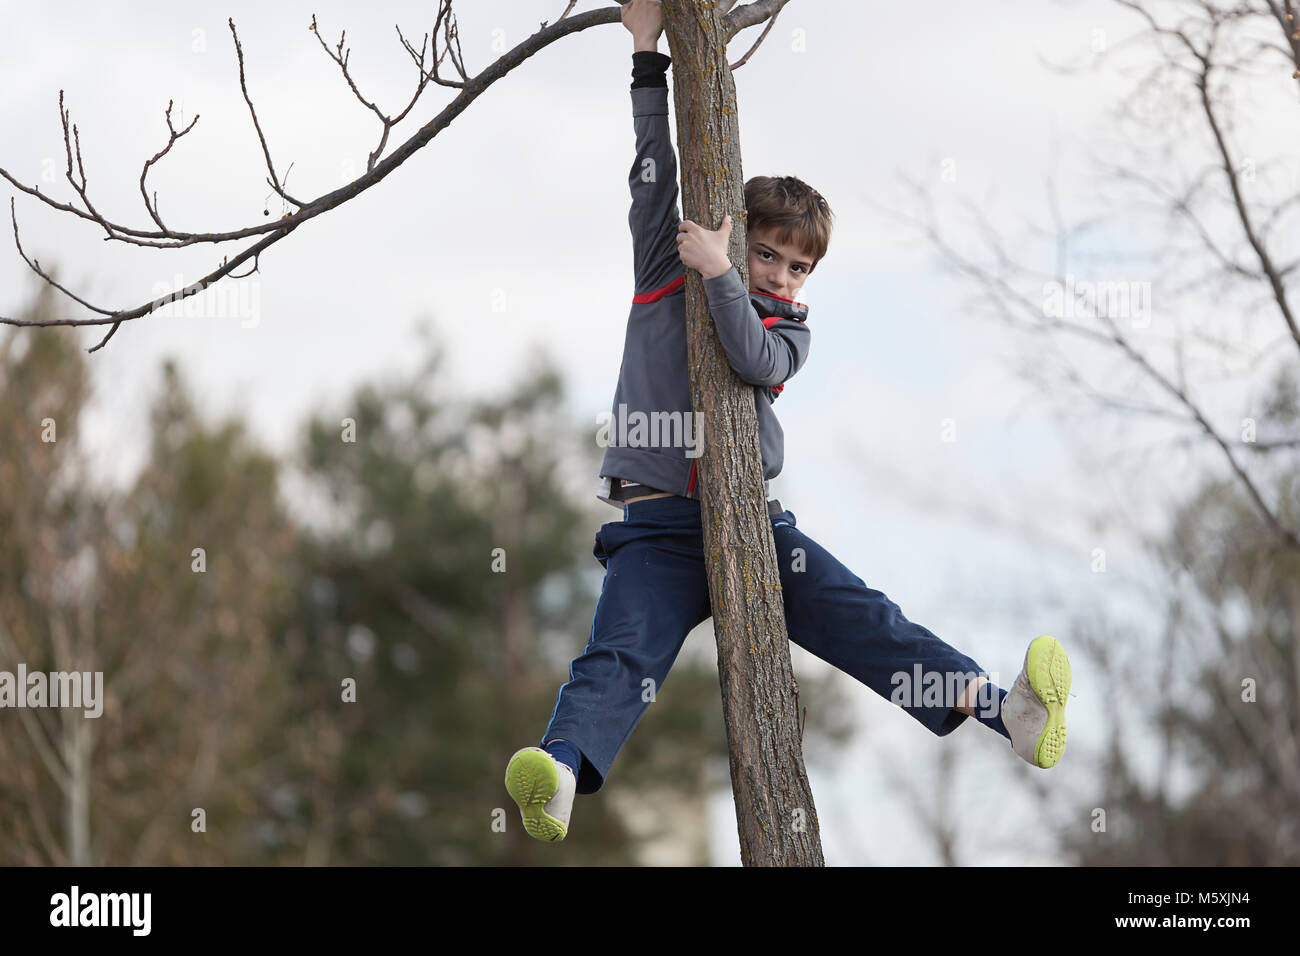 Garçon de 10 ans d'escalade sur un arbre à la caméra. Coup horizontal avec lumière naturelle Banque D'Images